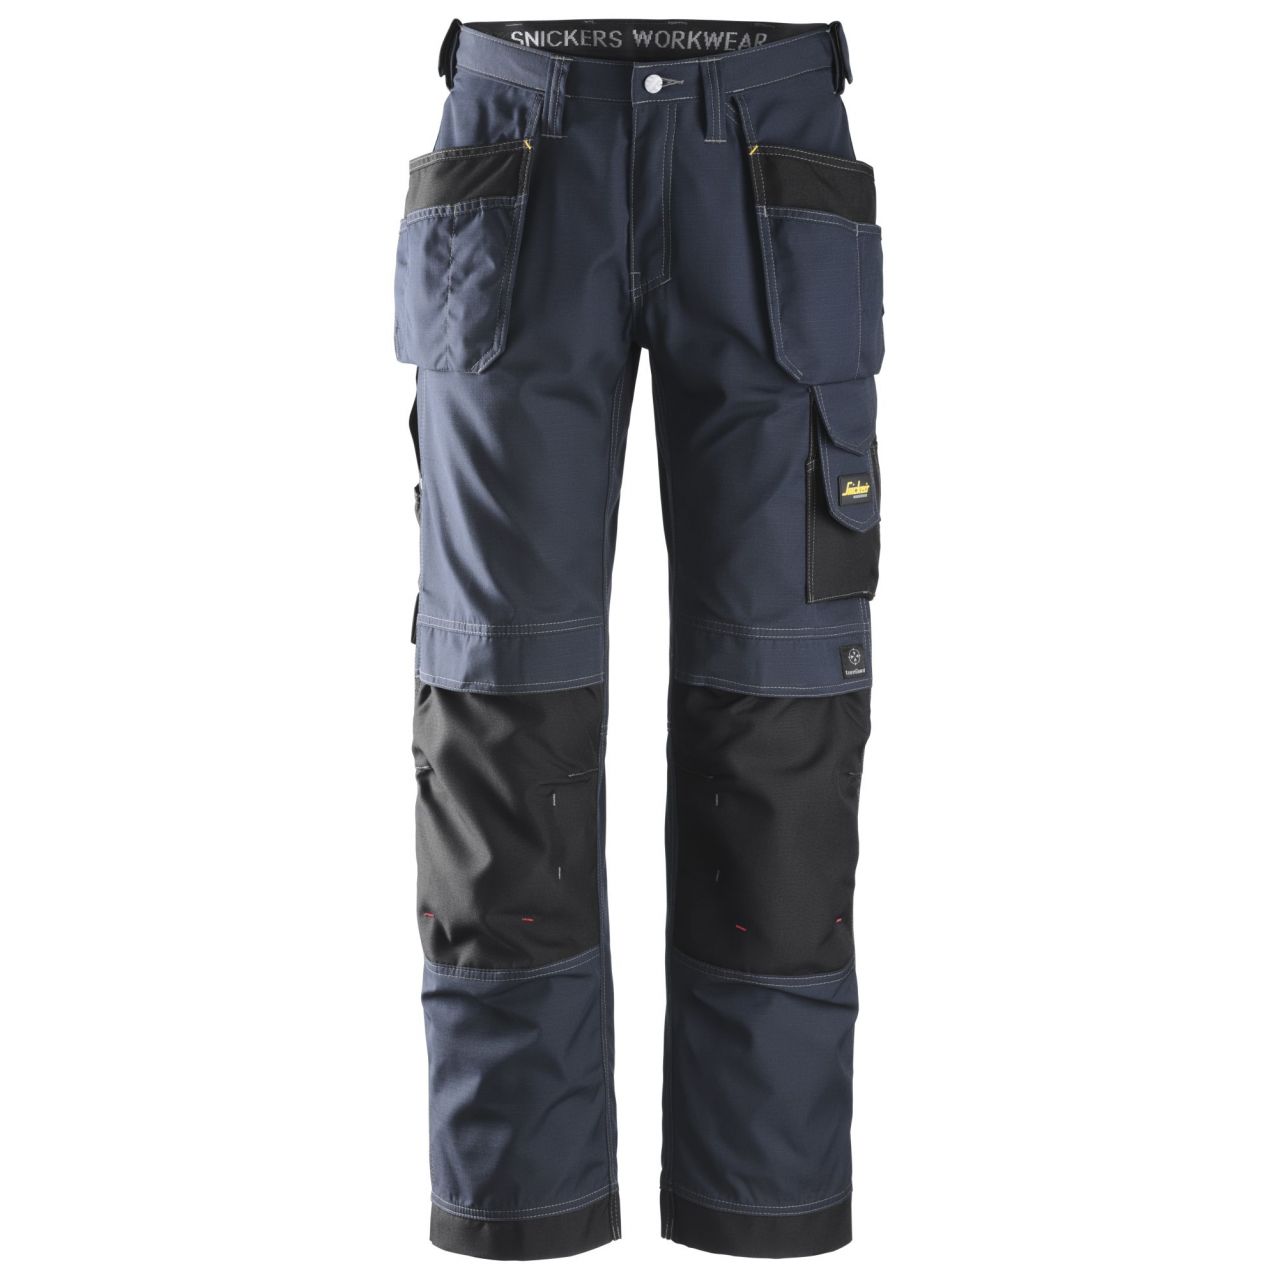 3213 Pantalón largo Rip-Stop con bolsillos flotantes azul marino-negro talla 250